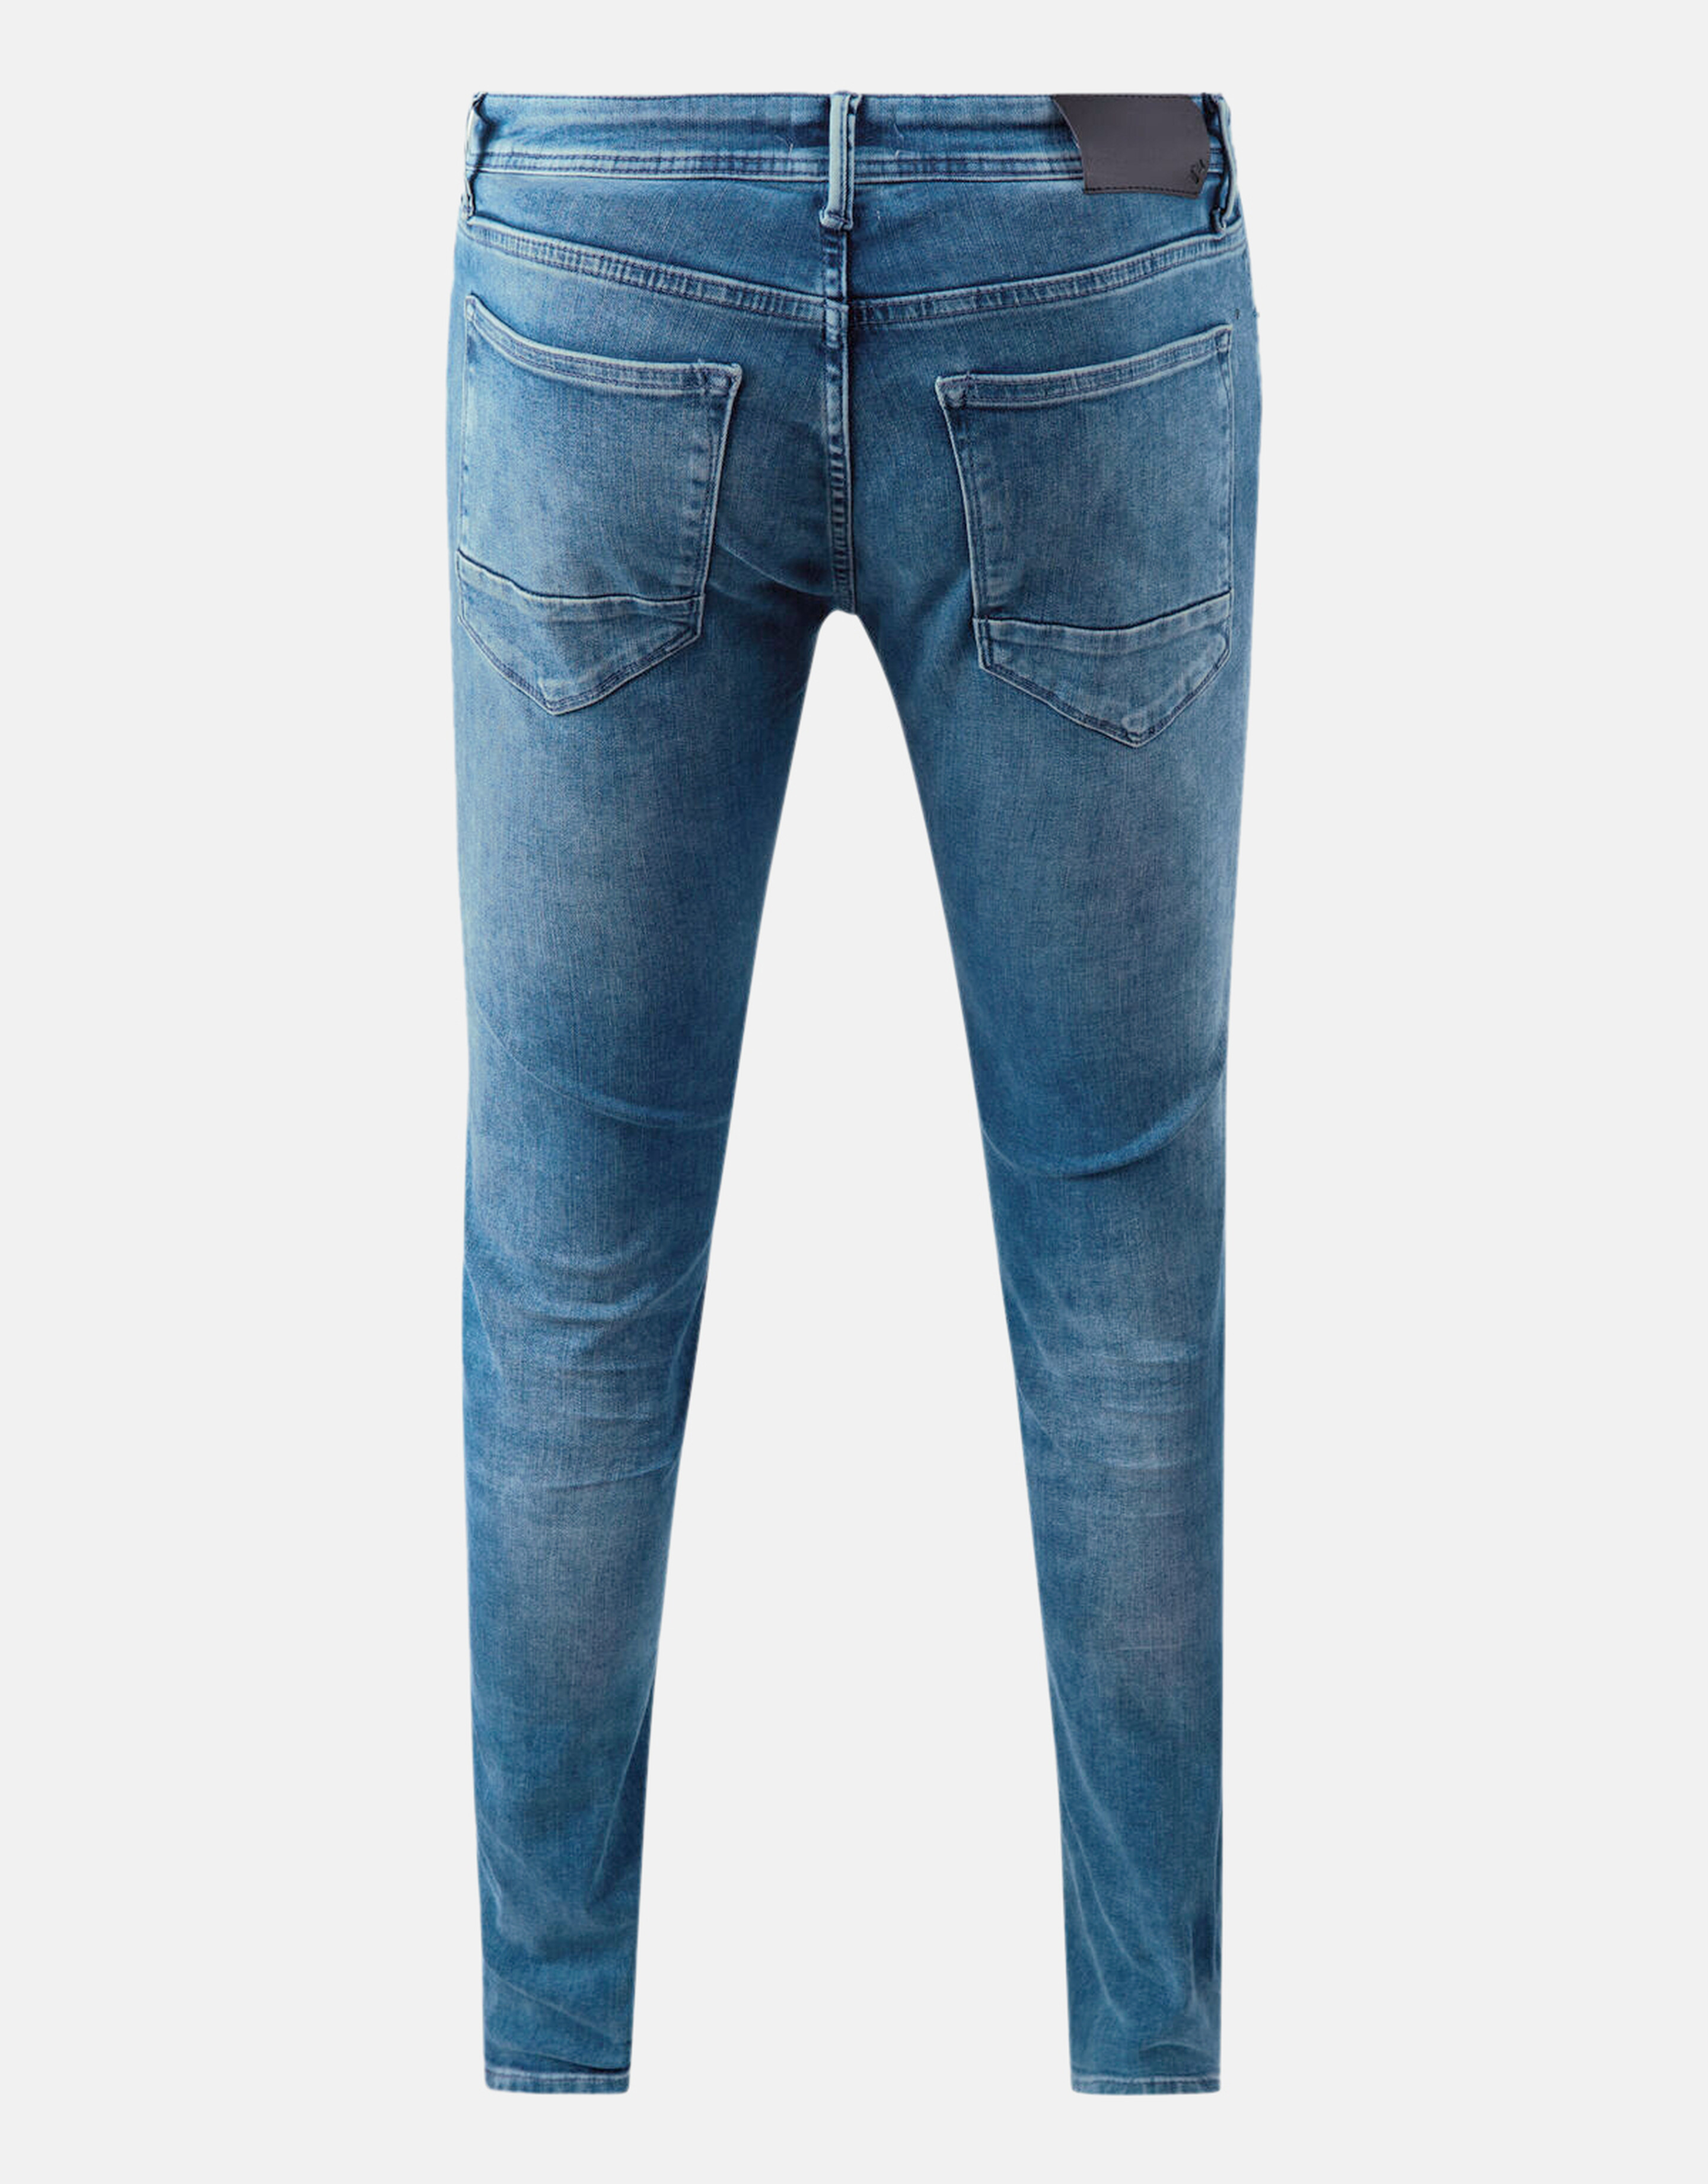 Slim Jeans Mediumstone L34 Refill